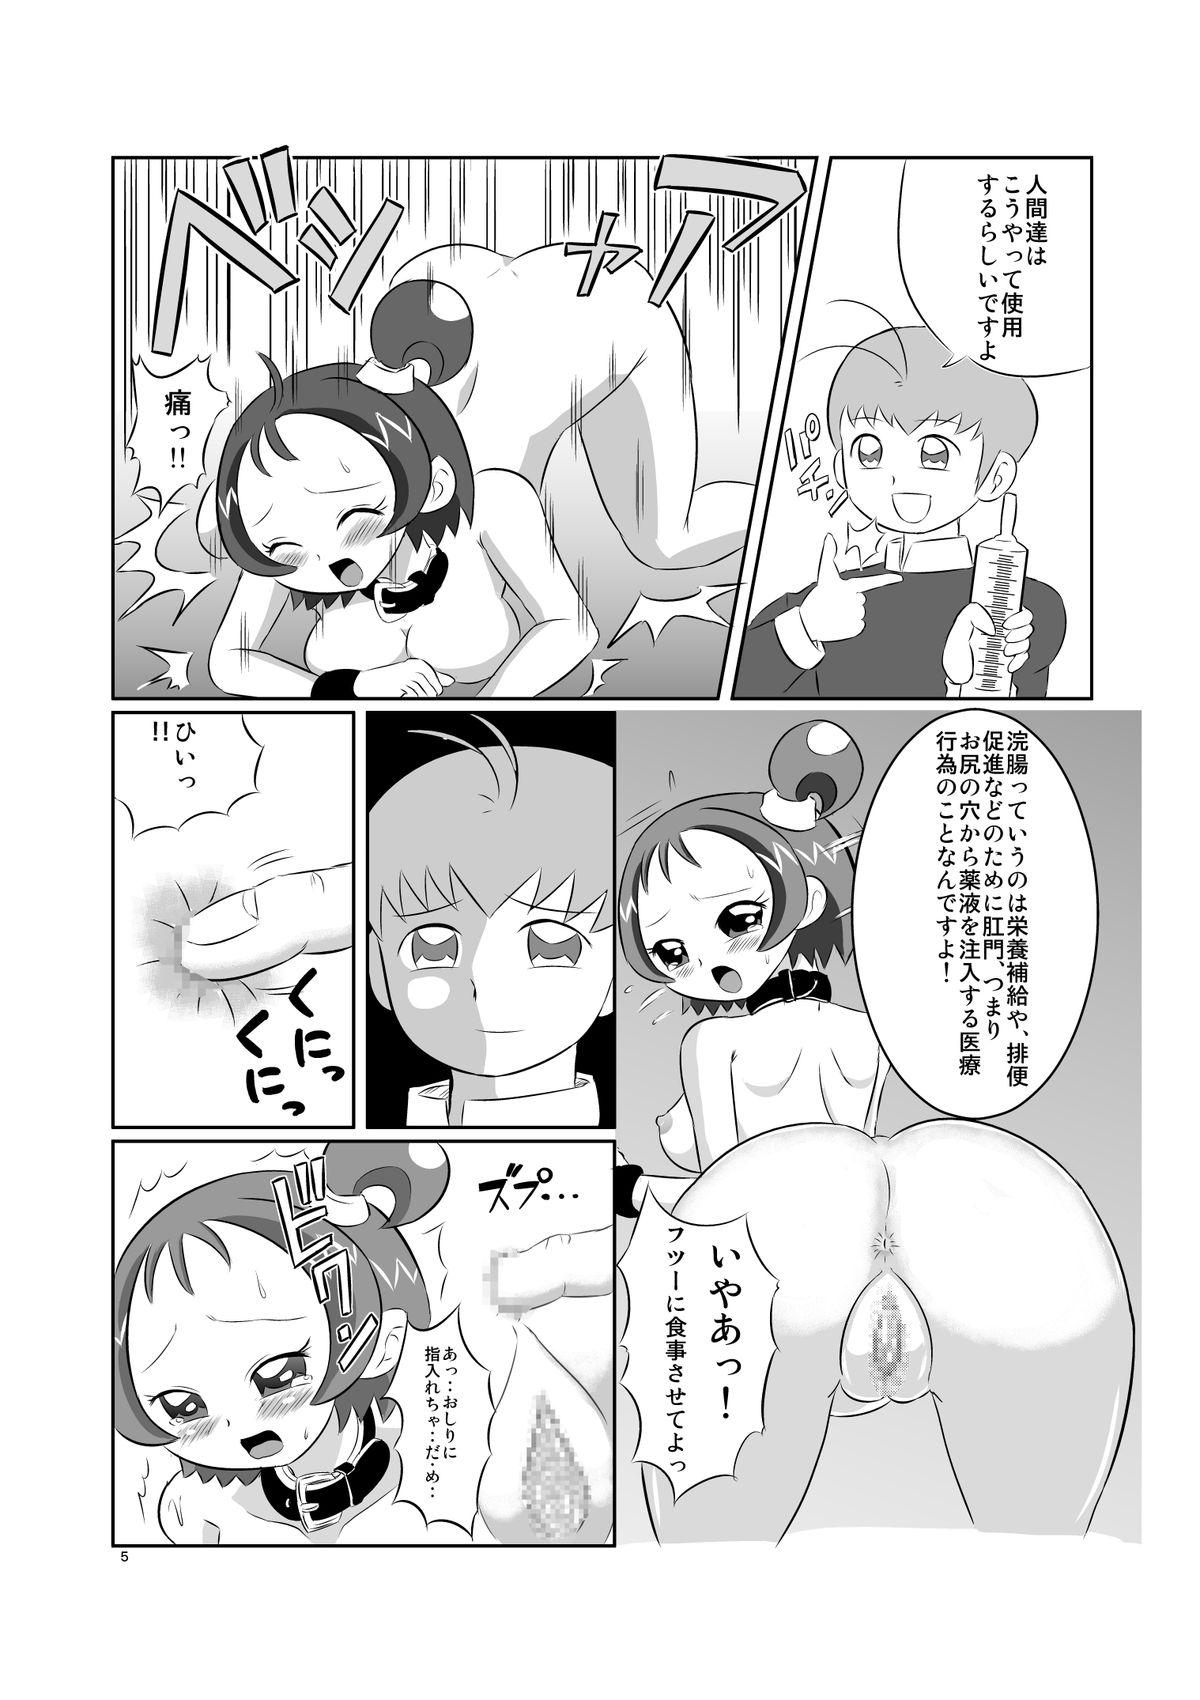 Mujer DEEP PURPLE 肛虐調教編 - Ojamajo doremi Grandpa - Page 7